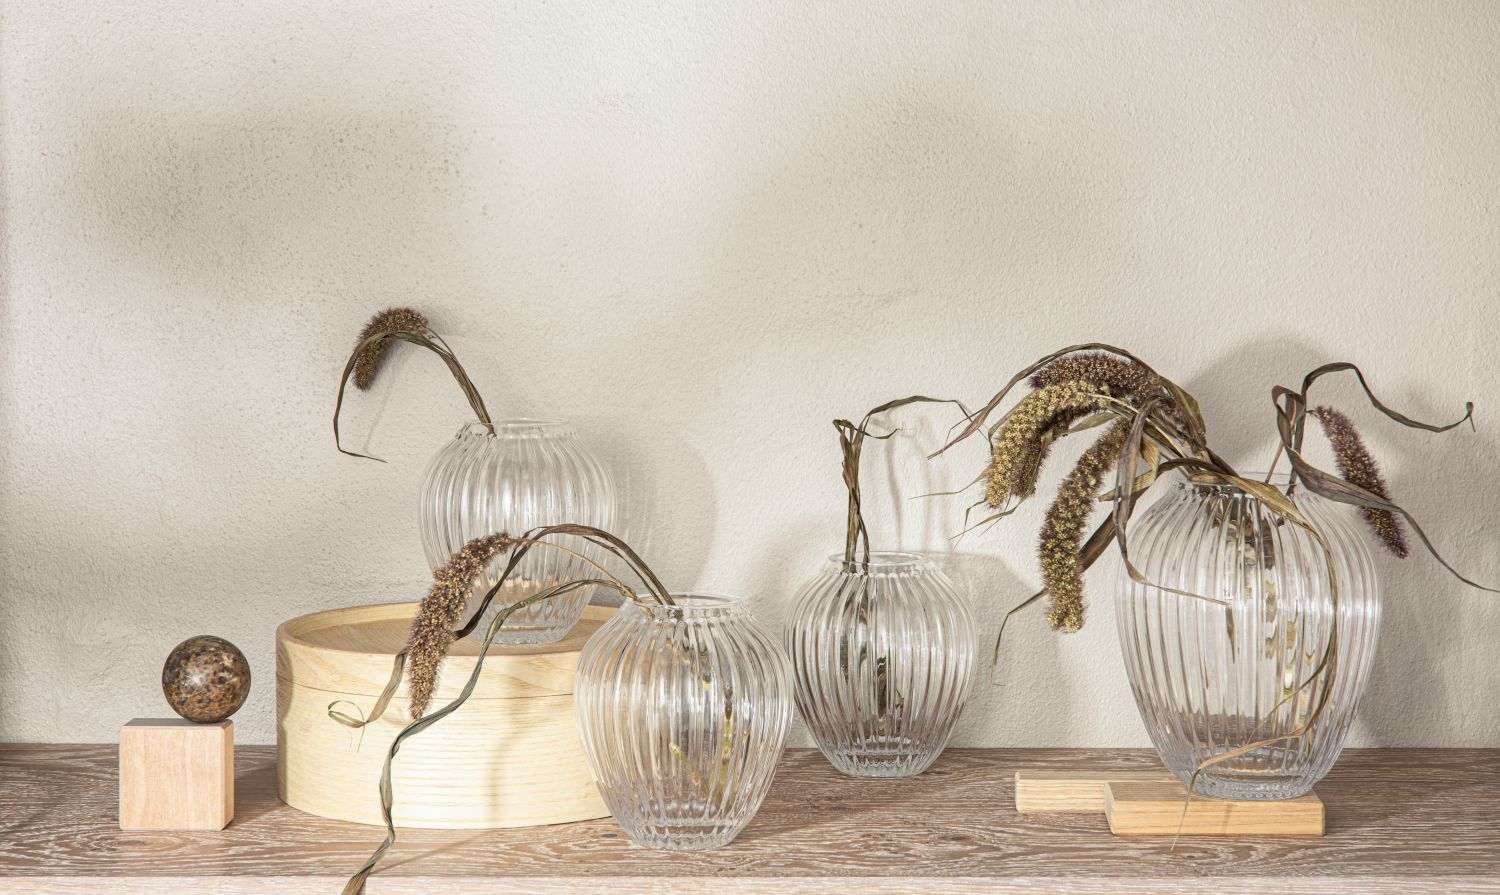 Hammershøi Glass Vase Transparent